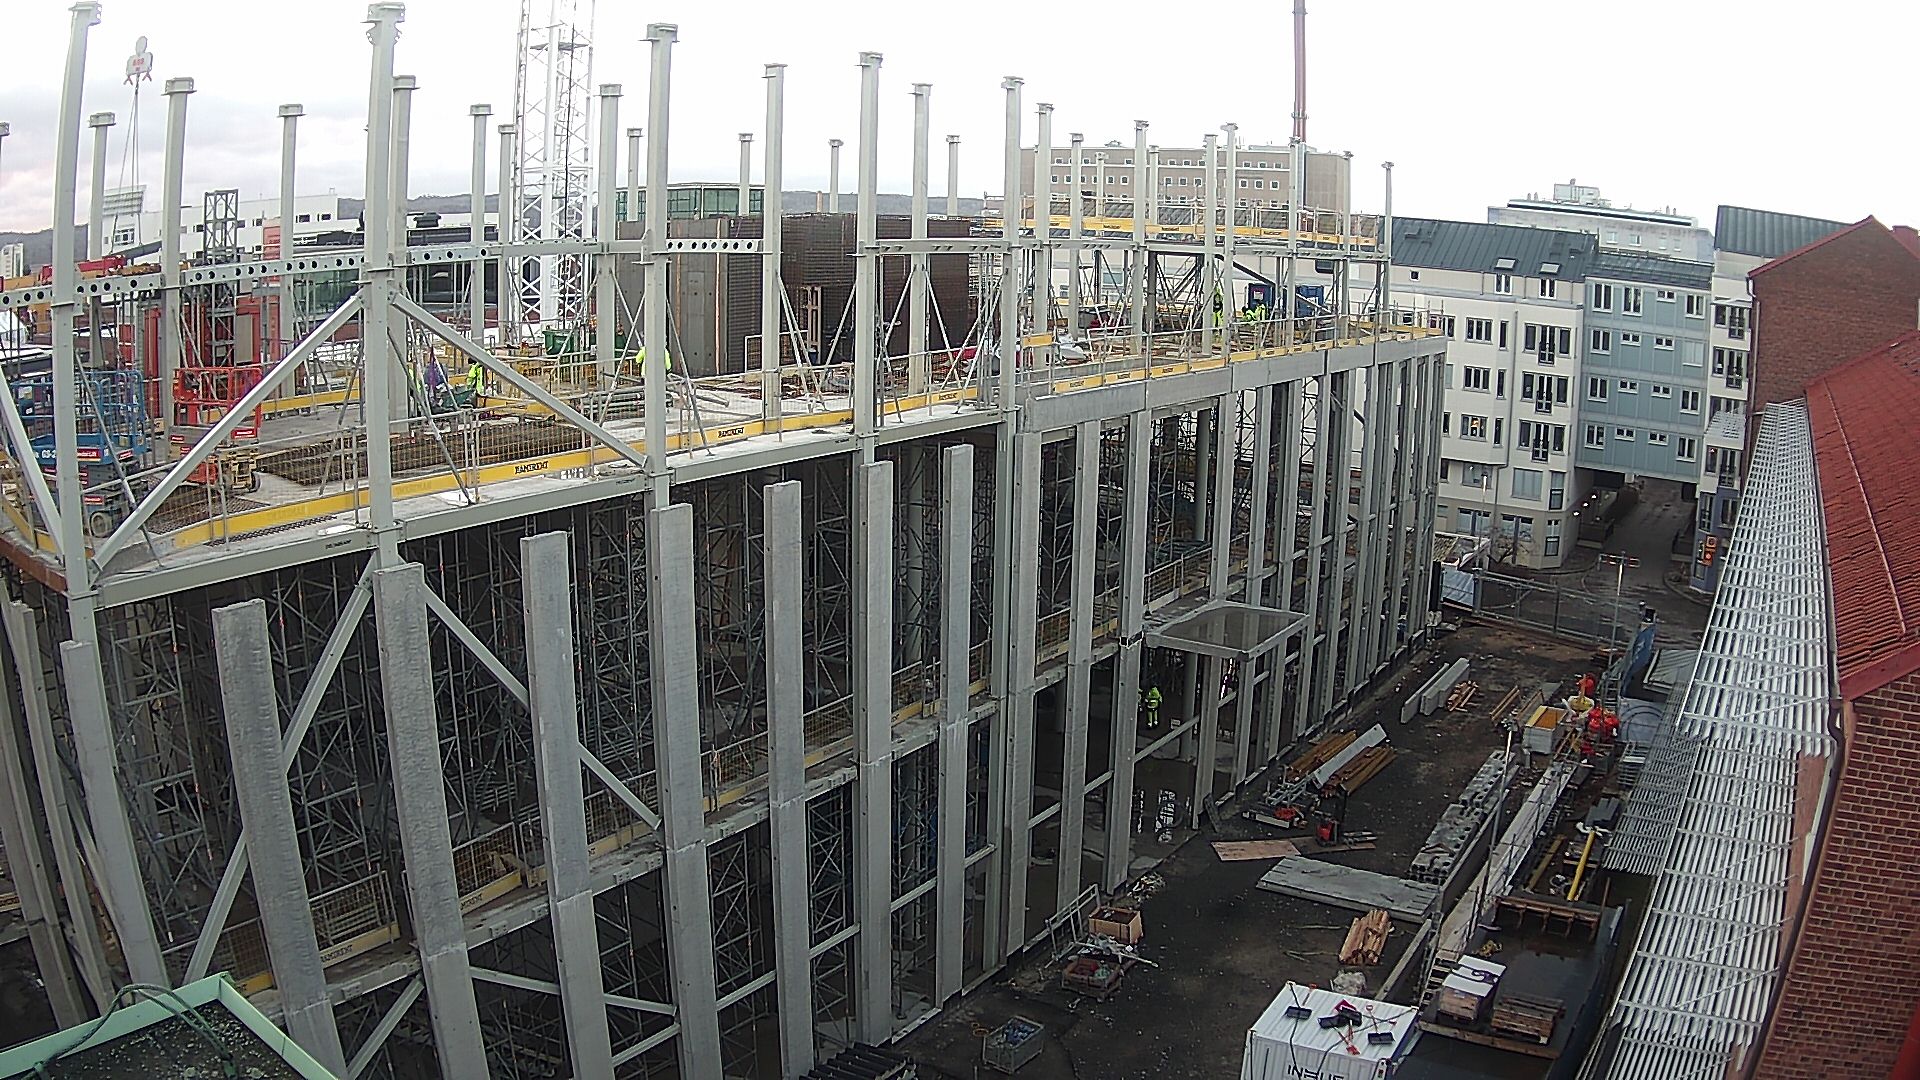 Byggarbetsplatsen där stomme monteras på våning 4, sett från Science Park House.